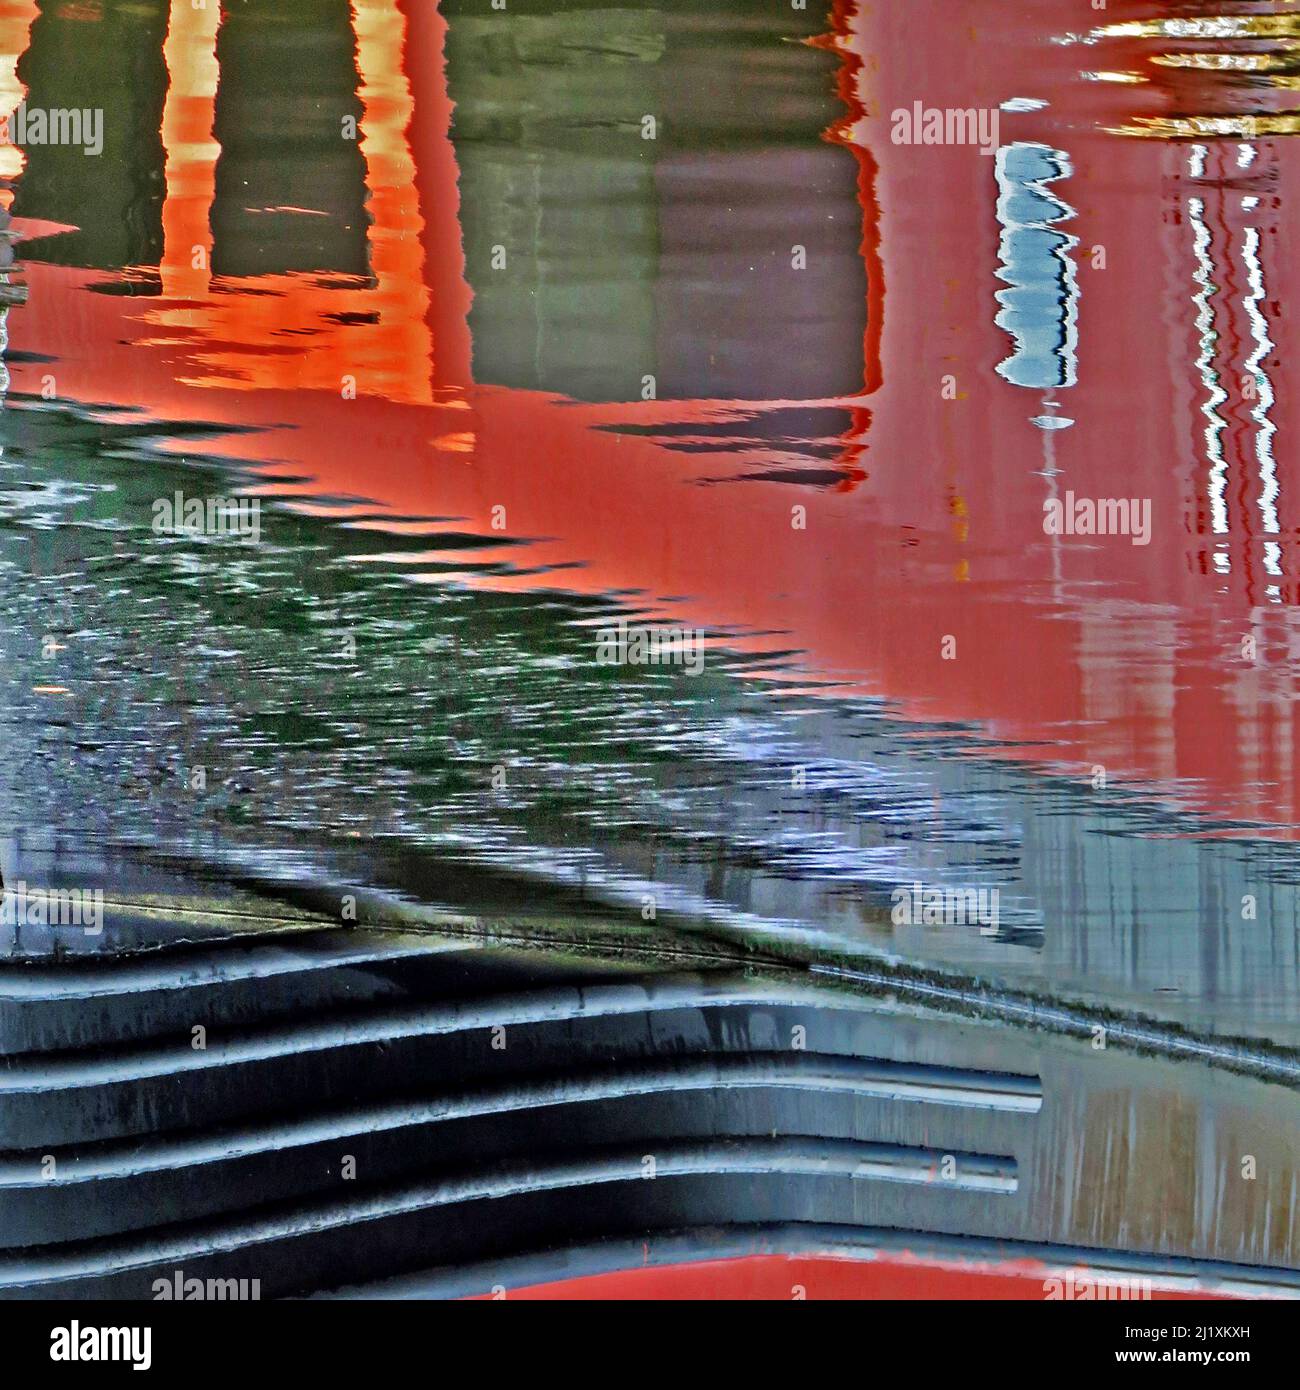 Abstraktes Foto des britischen Wasserweges mit reflektierten Mustern, Strukturen, Formen und Bewegungen, mit einer Farbpalette in hellen Formen, gespiegelt r Stockfoto